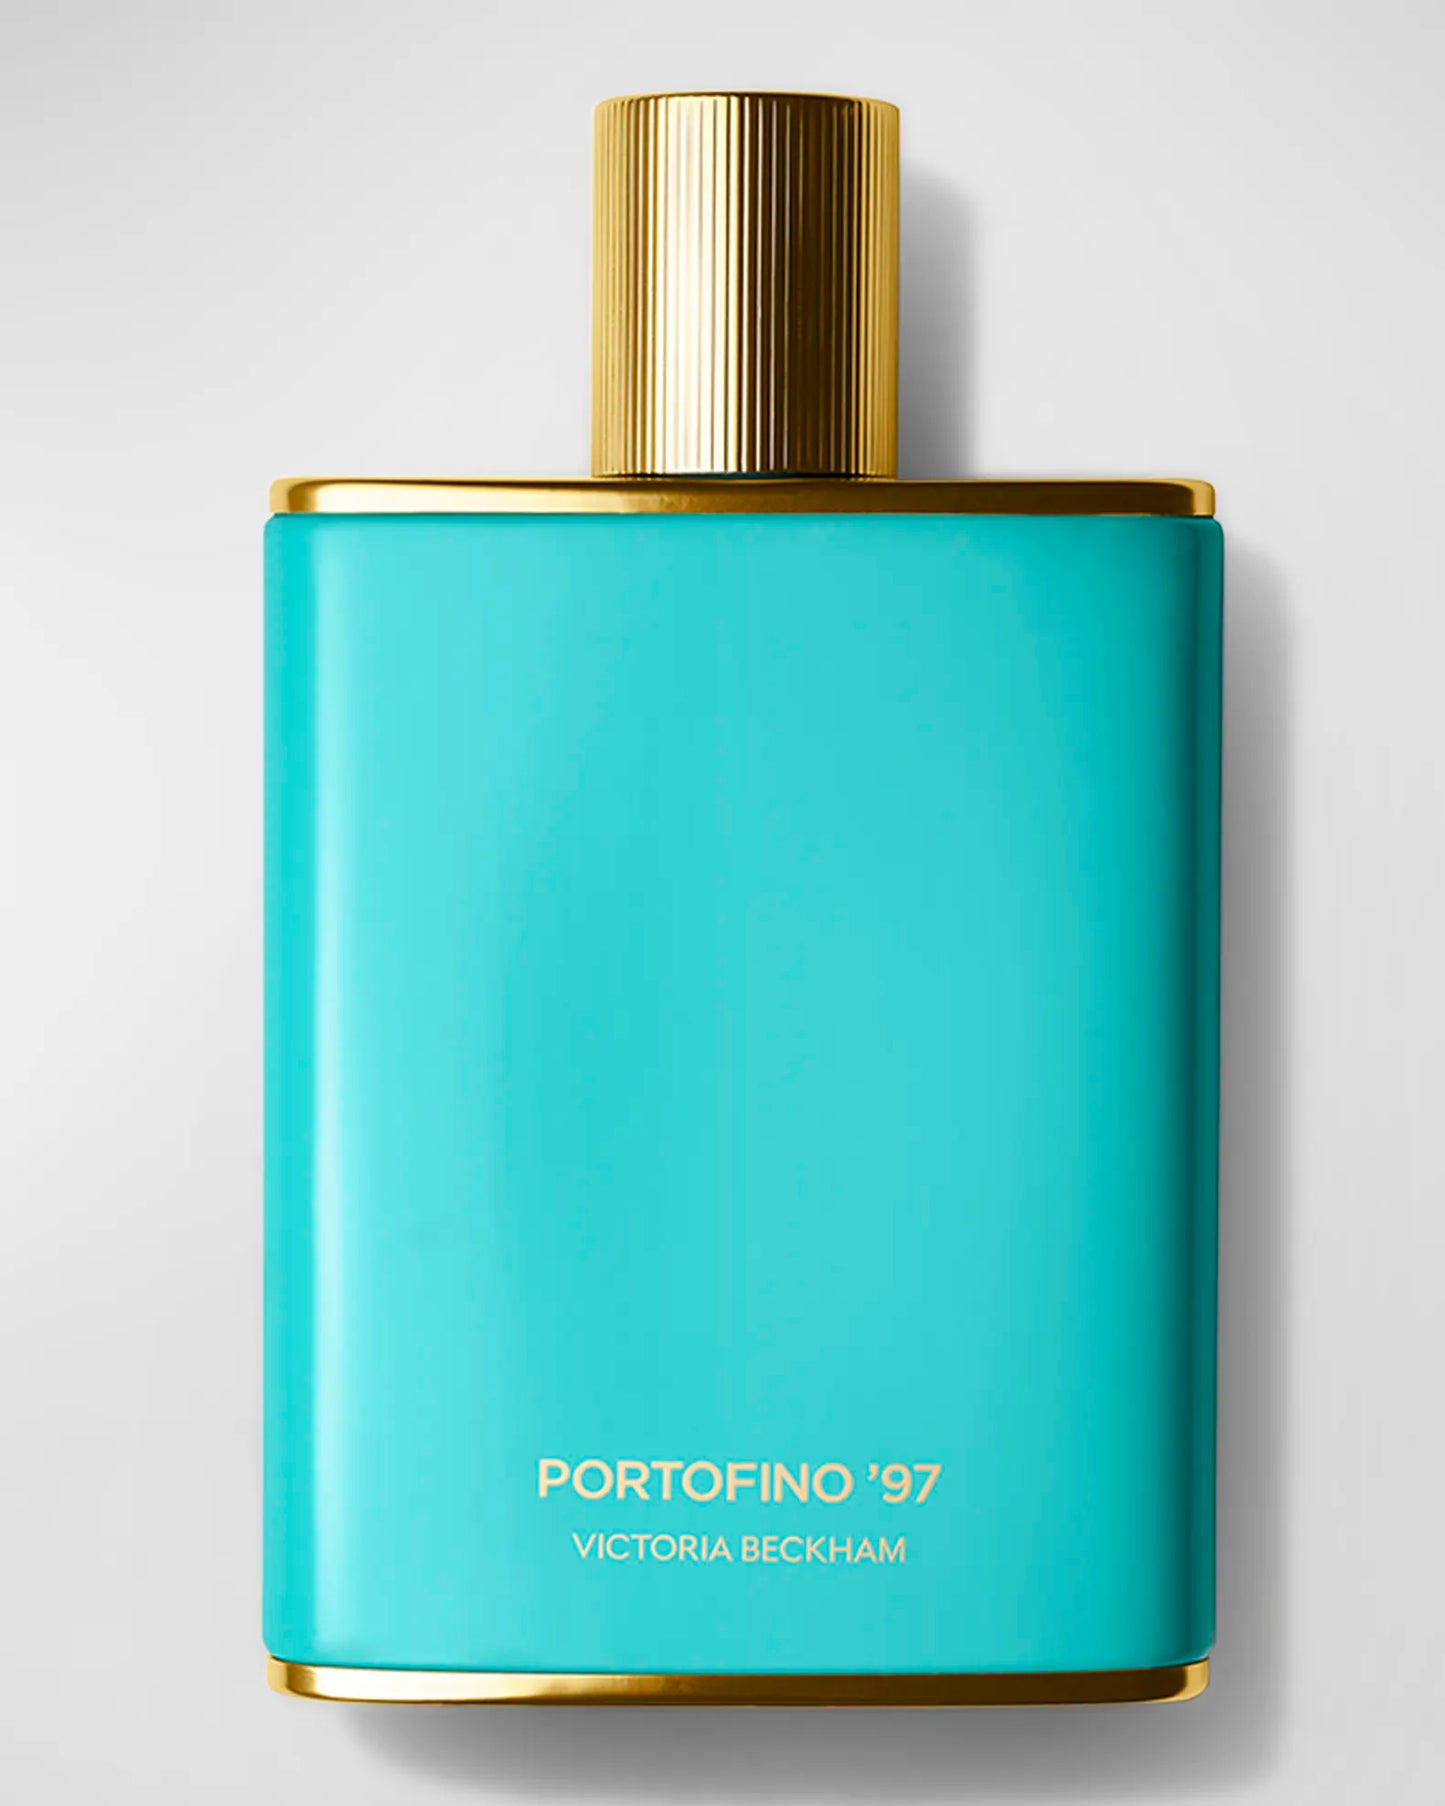 VICTORIA BECKHAM Portofino '97 Eau De Parfum